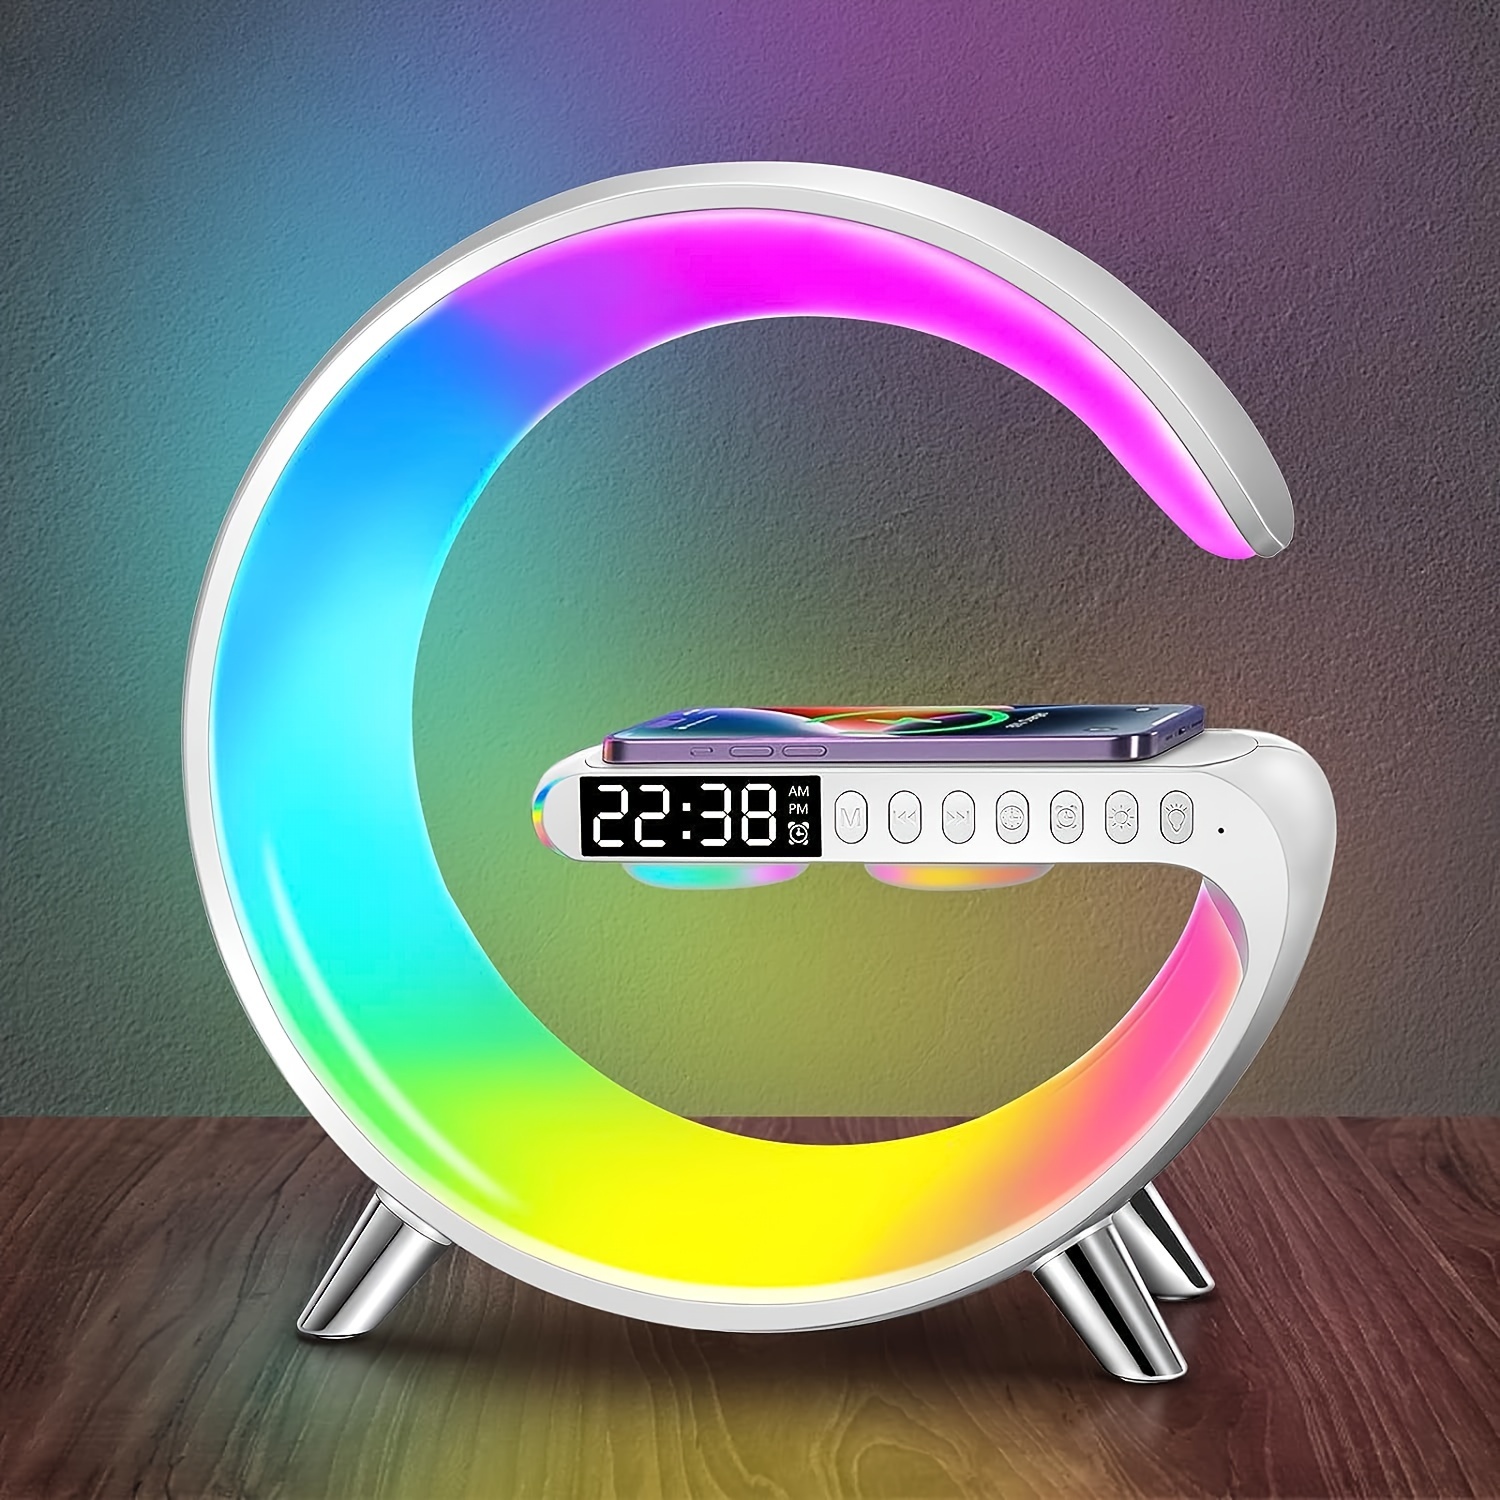  Reloj despertador con altavoz Bluetooth con luz nocturna,  lámpara de noche táctil mejorada para dormitorio, luz cálida regulable,  cambio de color 48 RGB, máquina de sonido con ruido blanco, el mejor 